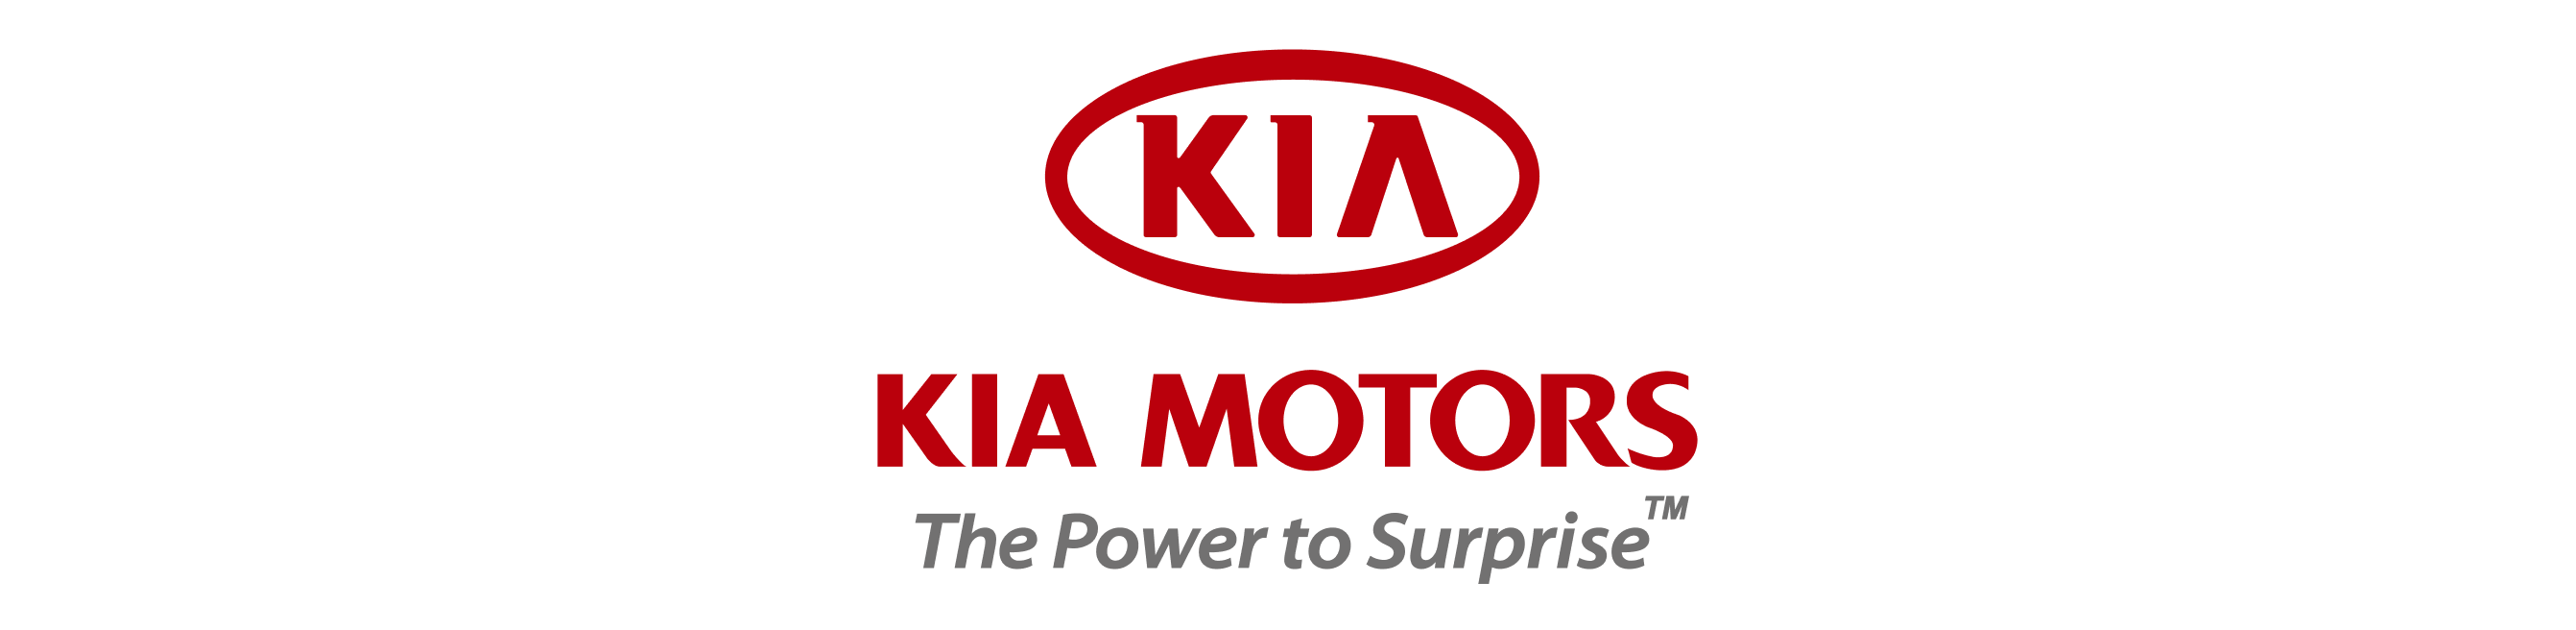 kia_motor